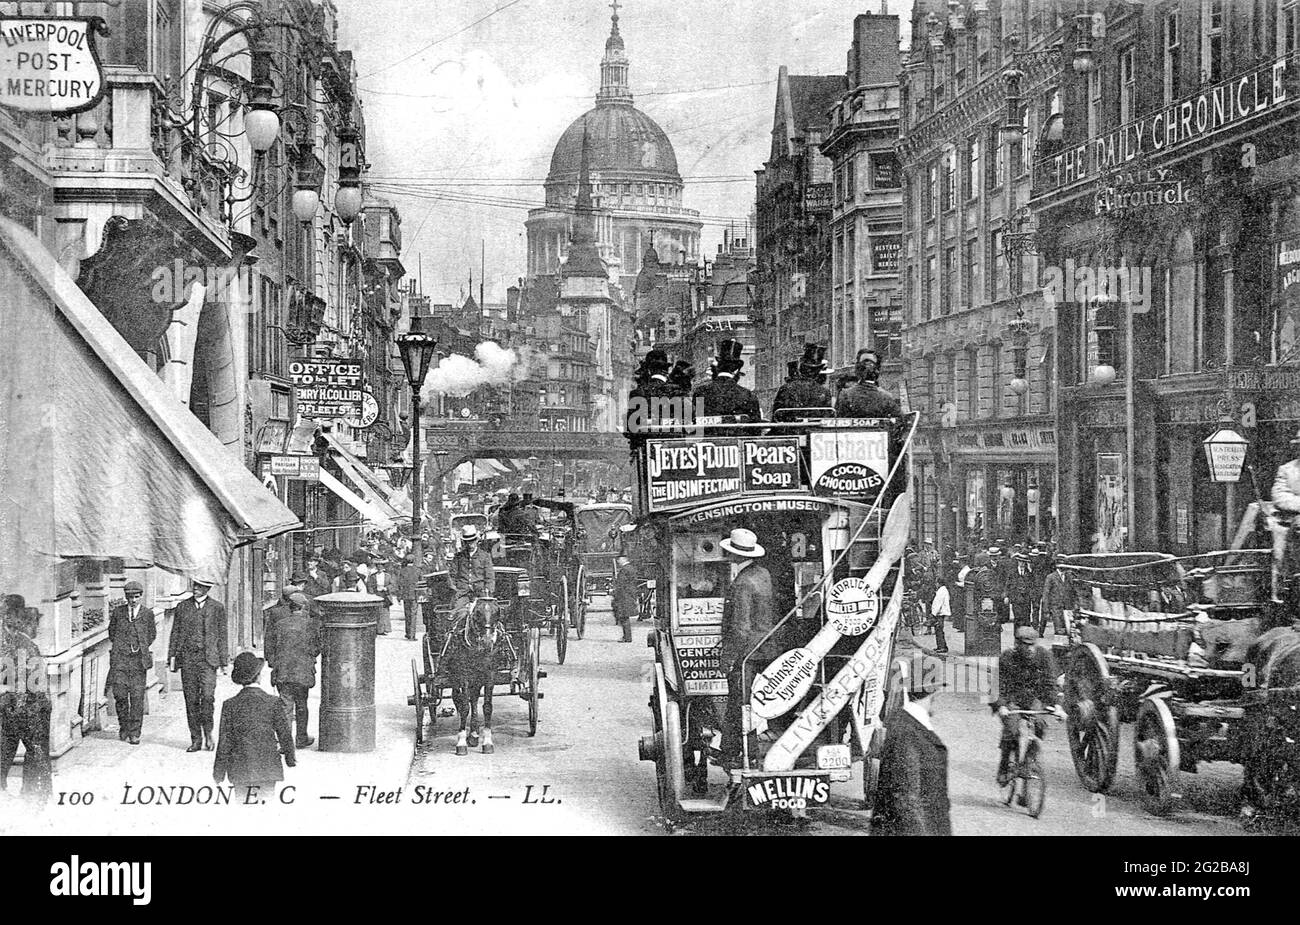 FLEET STREET, London, um 1900, mit Blick auf die St Paul's Cathedral und den Büros der Daily Chronicle auf der rechten Seite Stockfoto